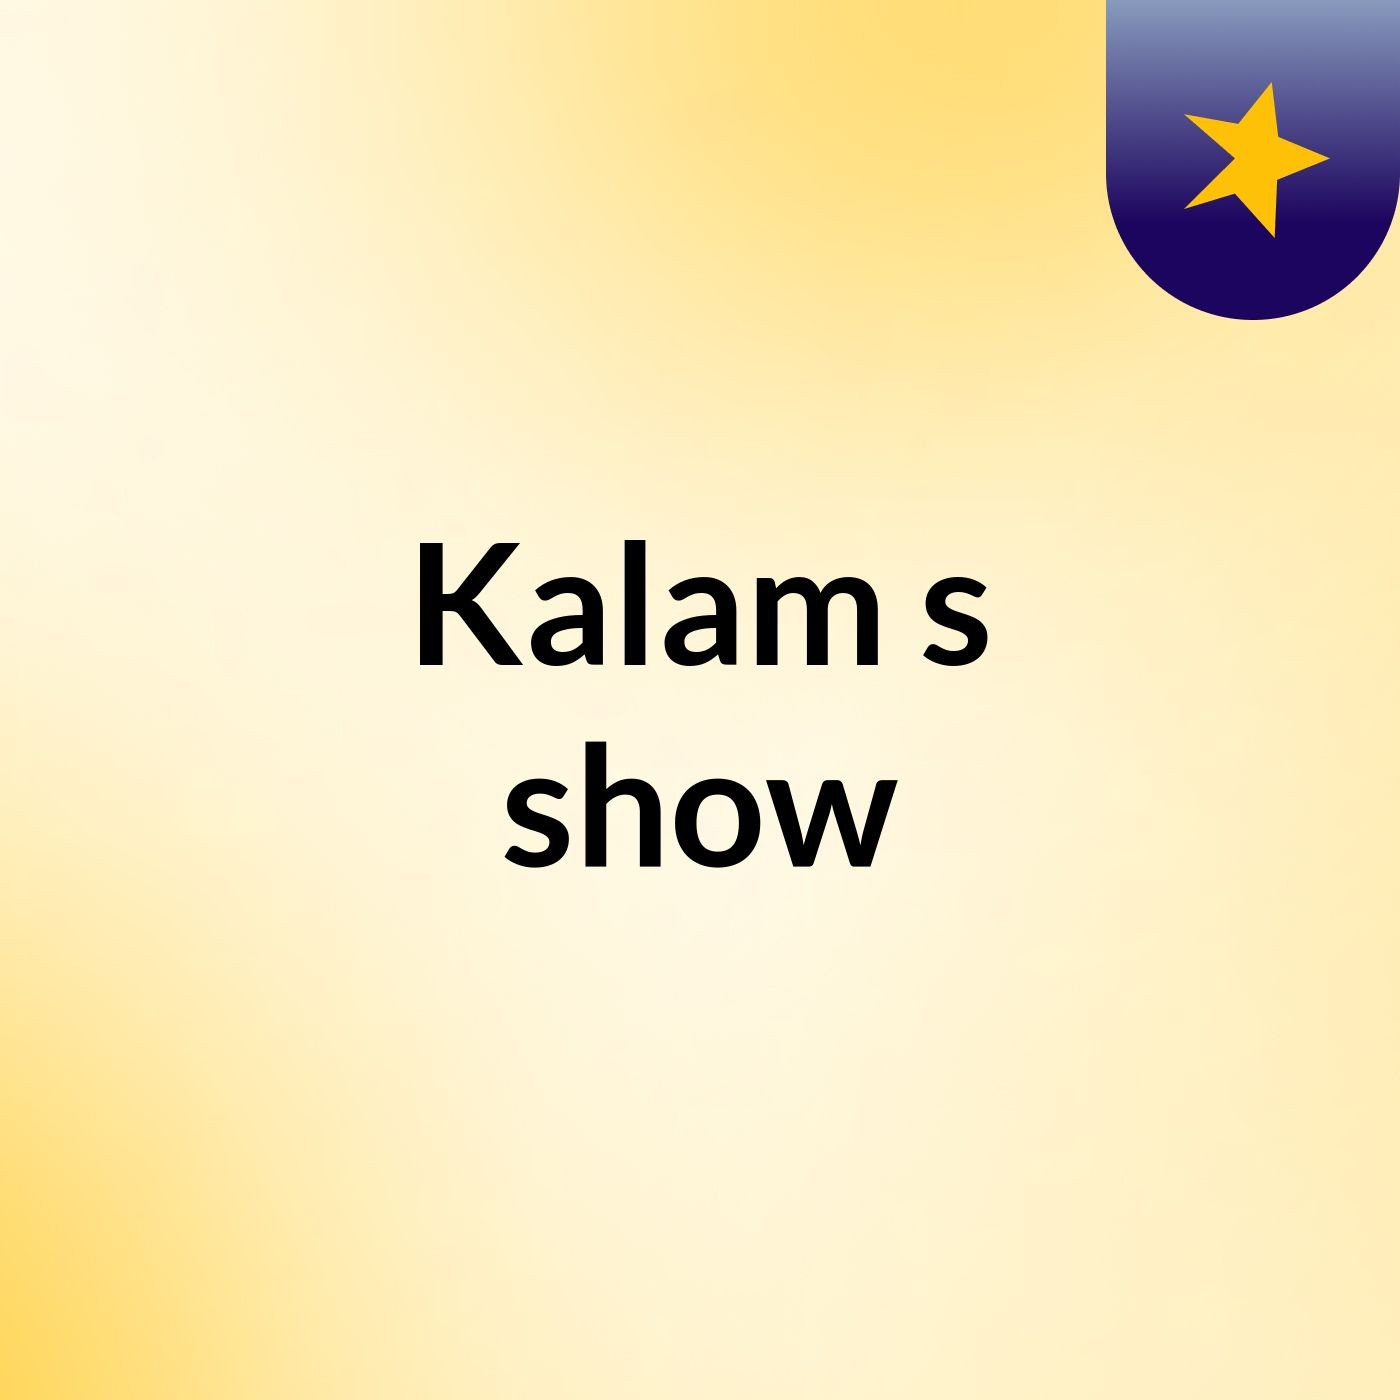 Kalam's show